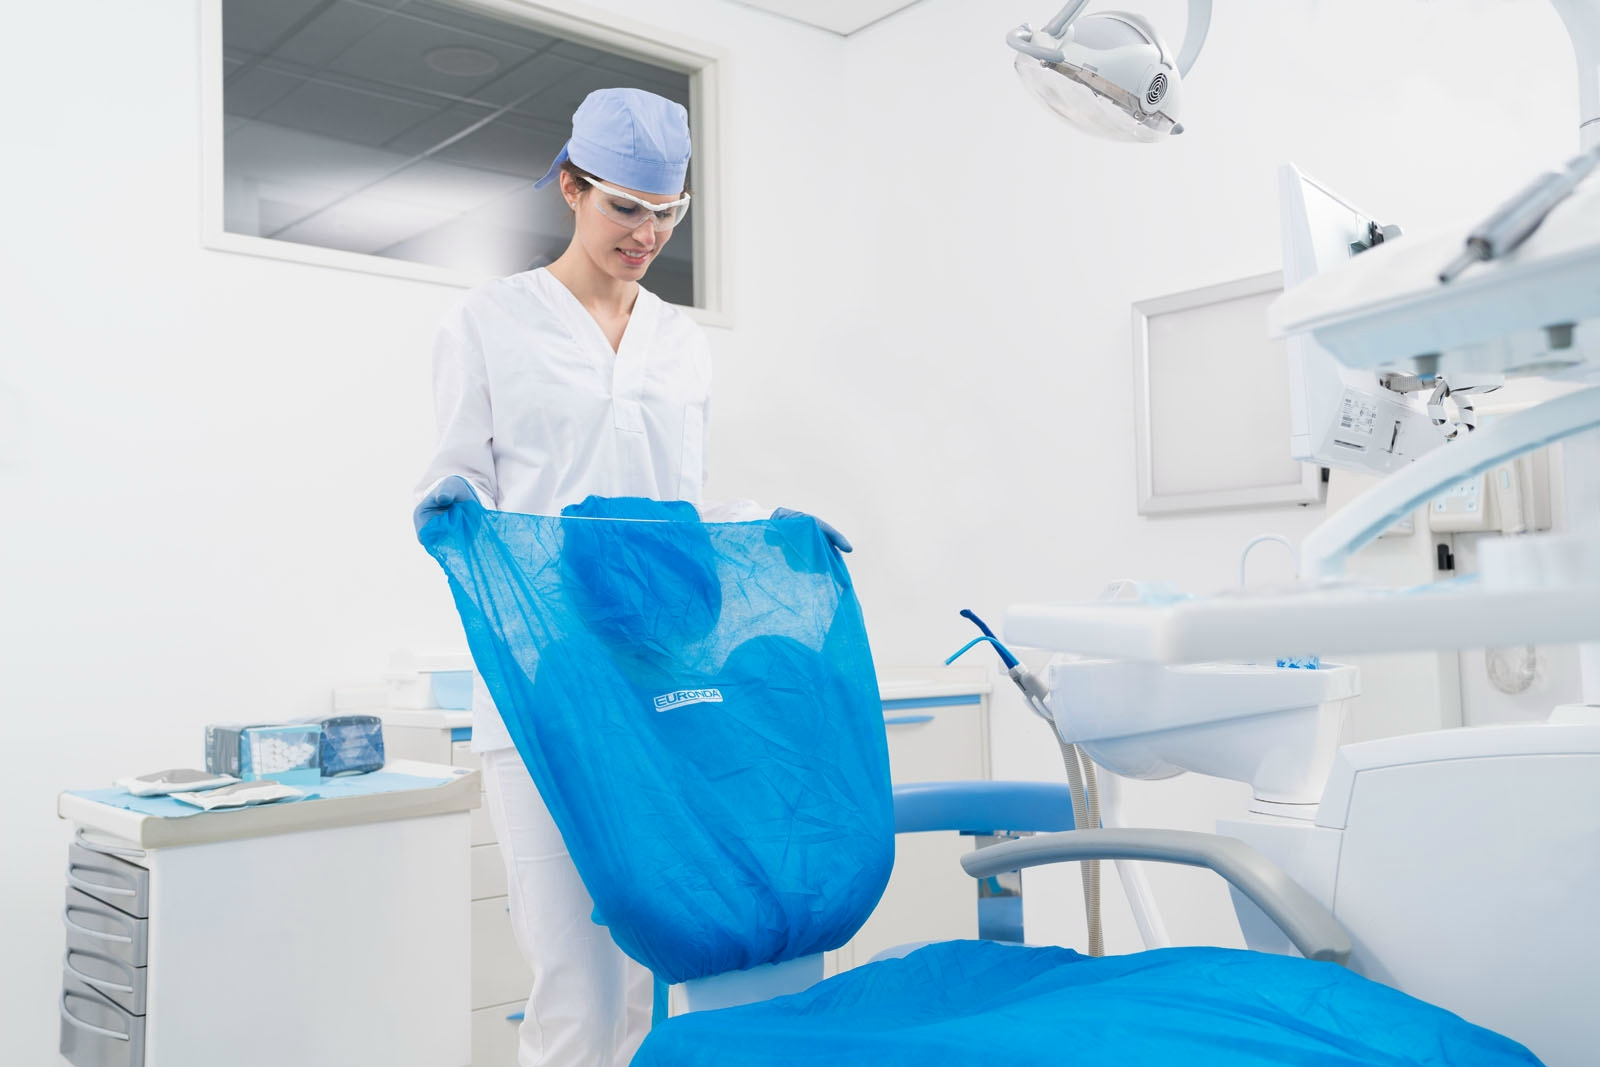 Monoart fogorvosi szék takaró készlet, műtős kék 25db